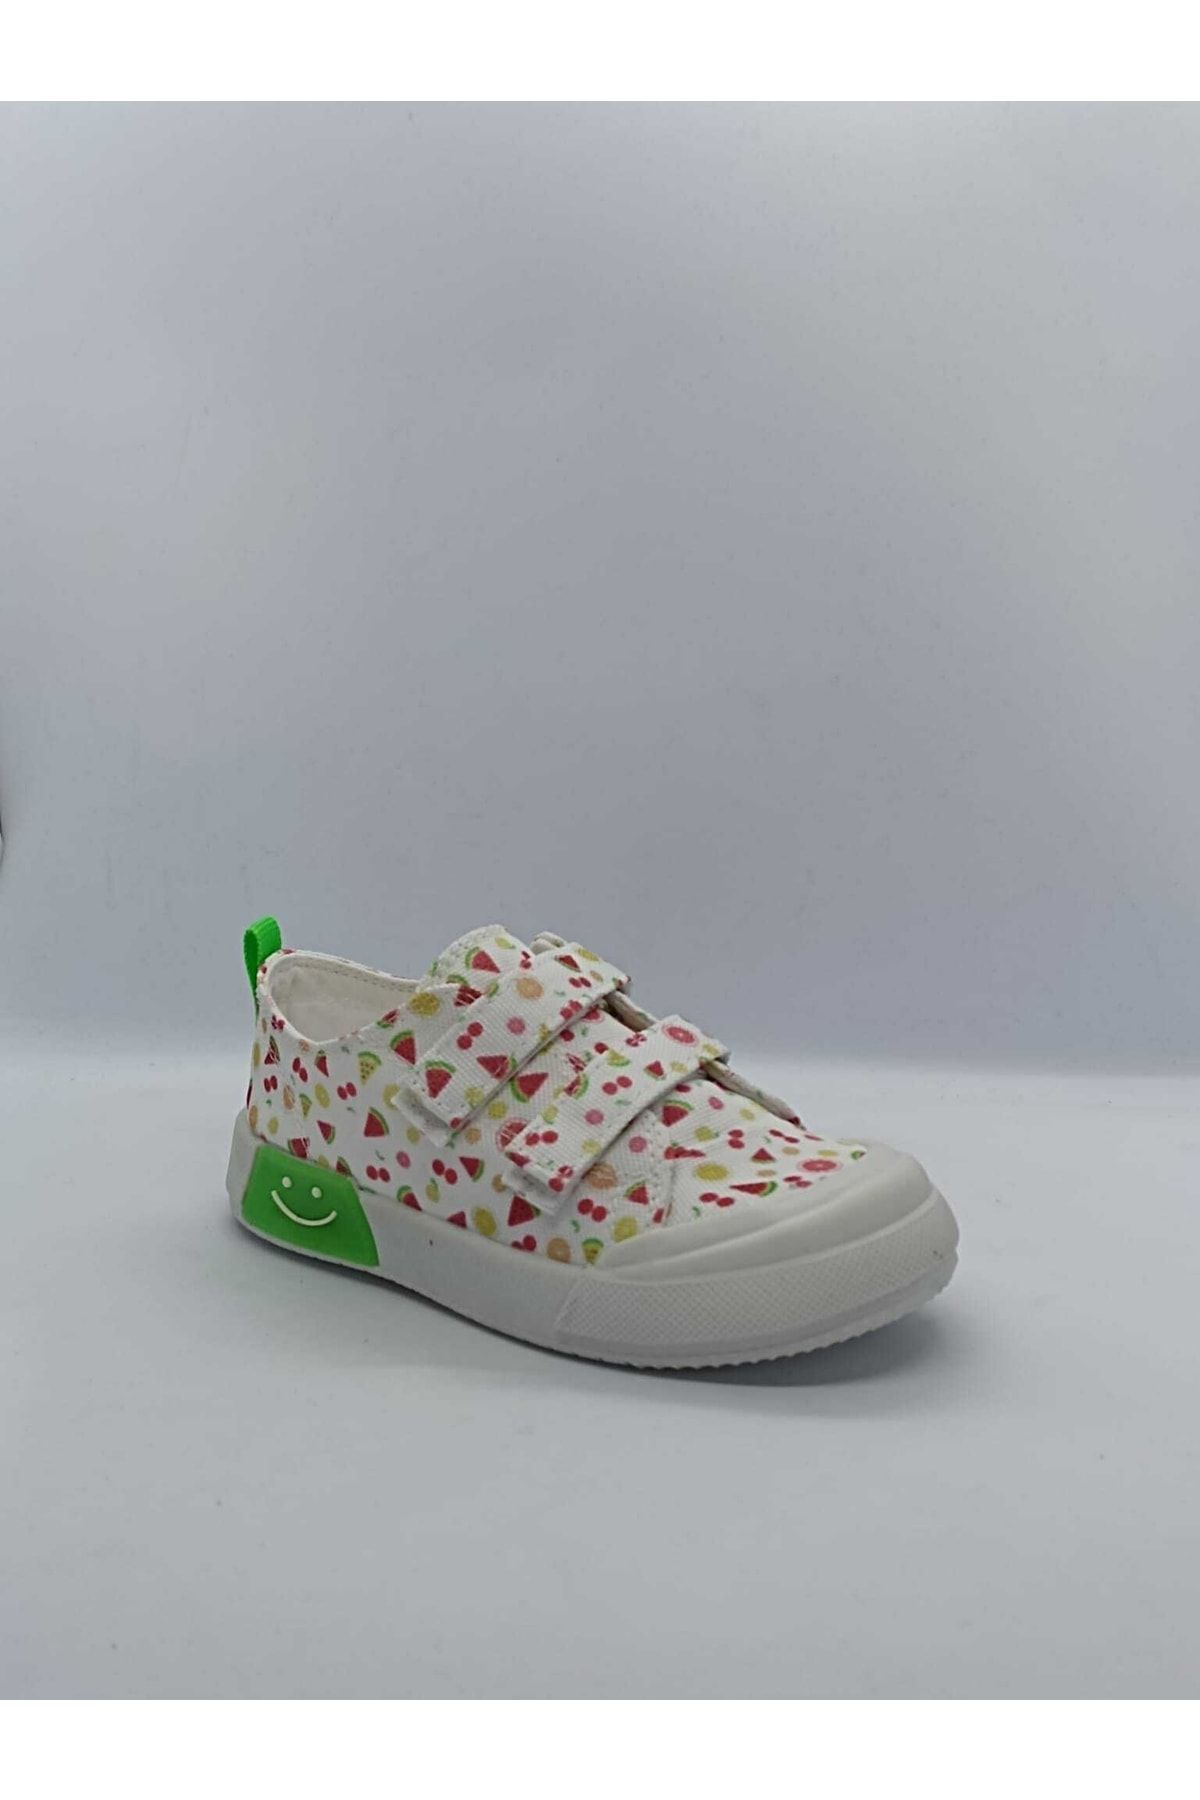 Vicco Yeşil - Çocuk Ayakkabısı